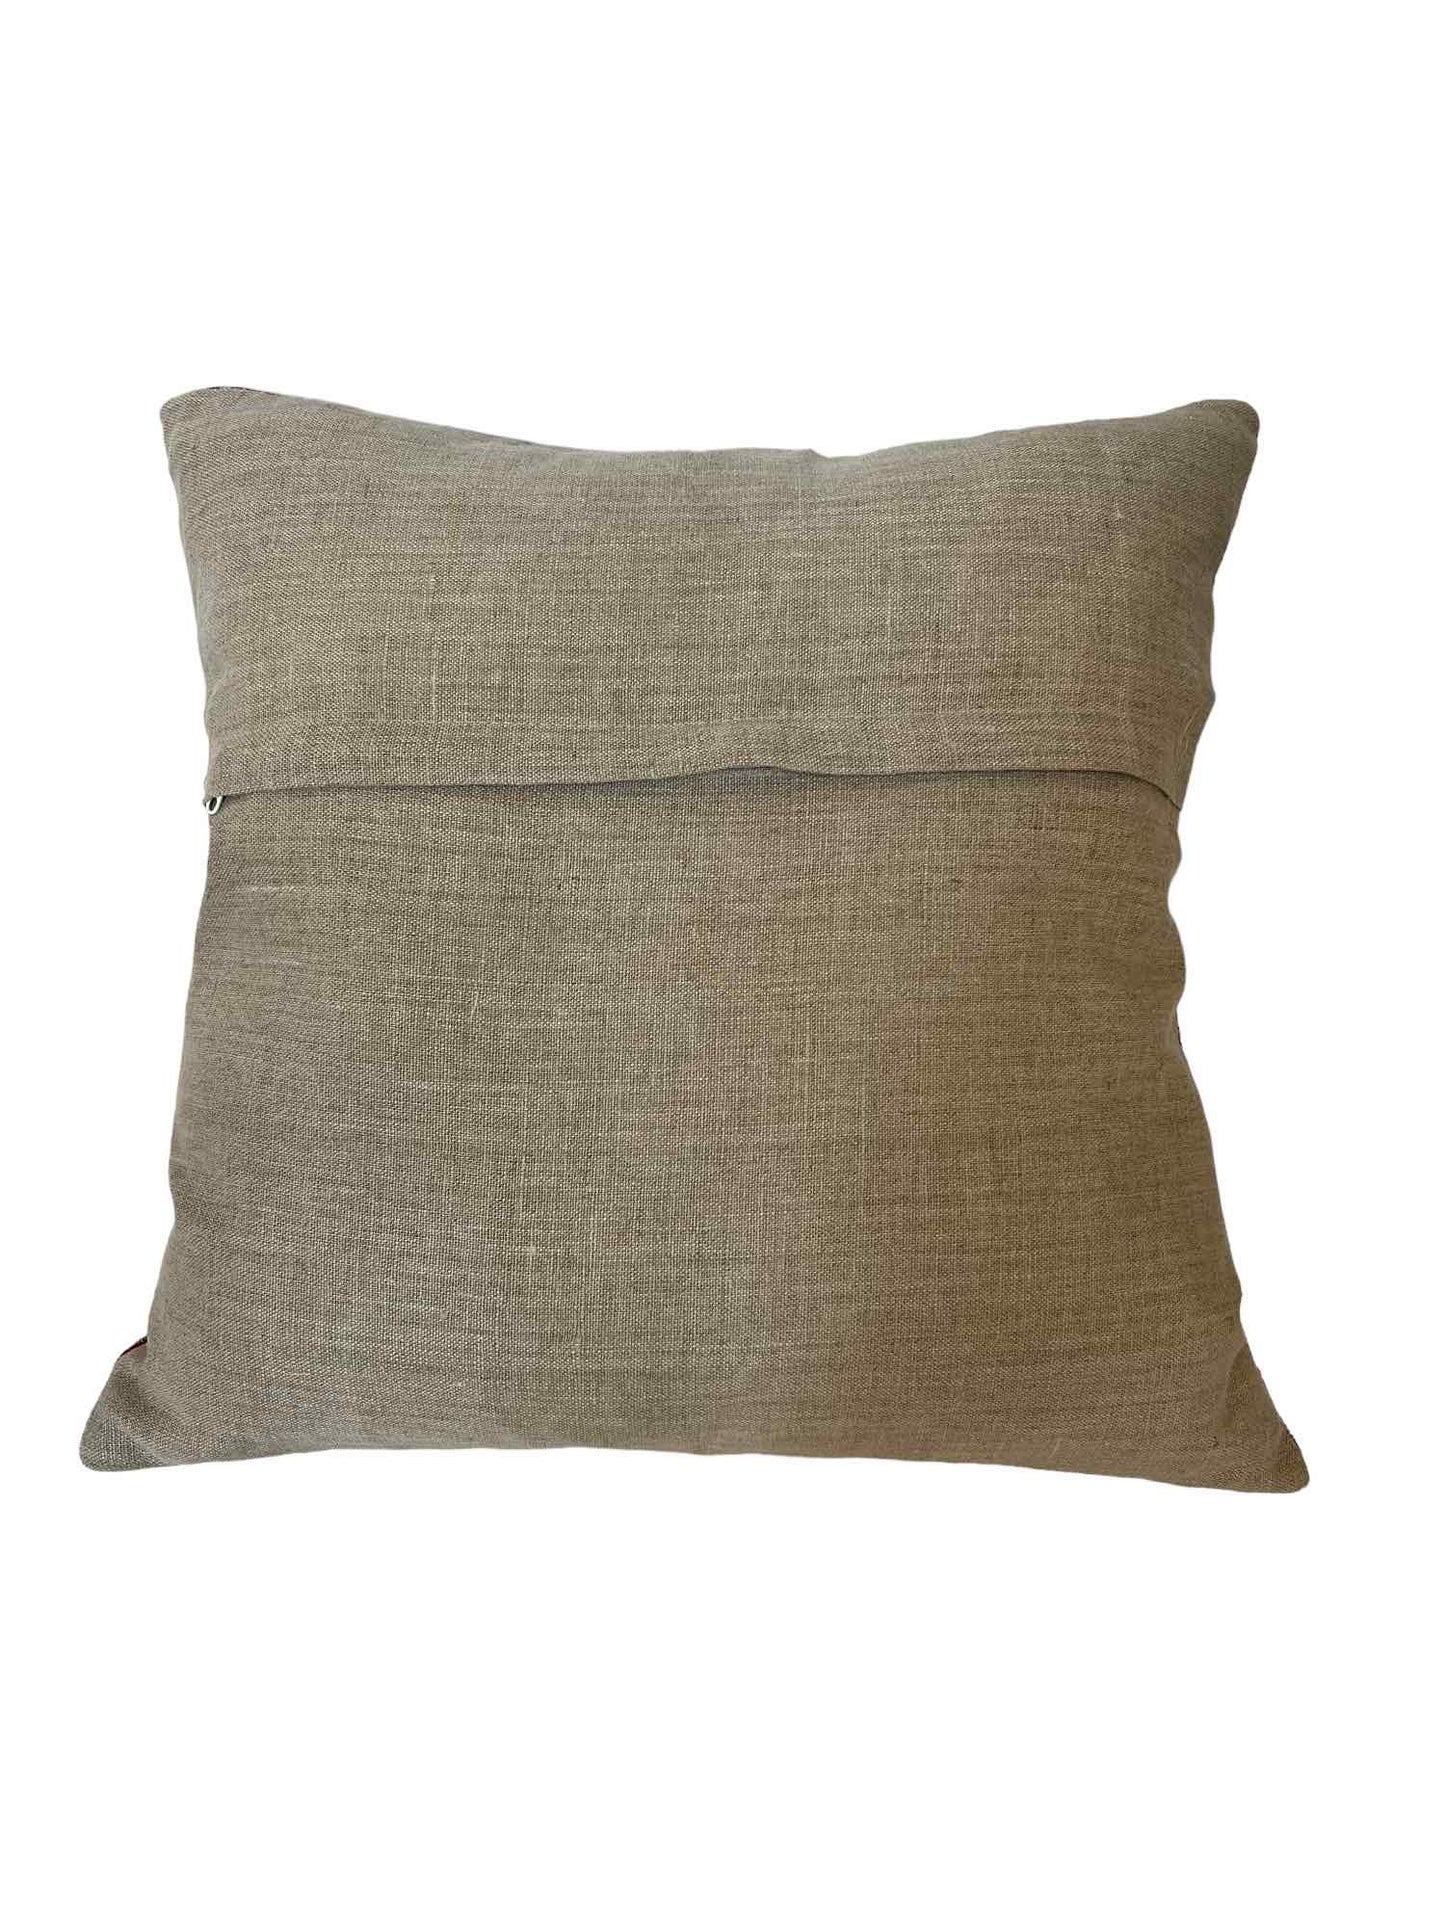 Kantha cushion reverse